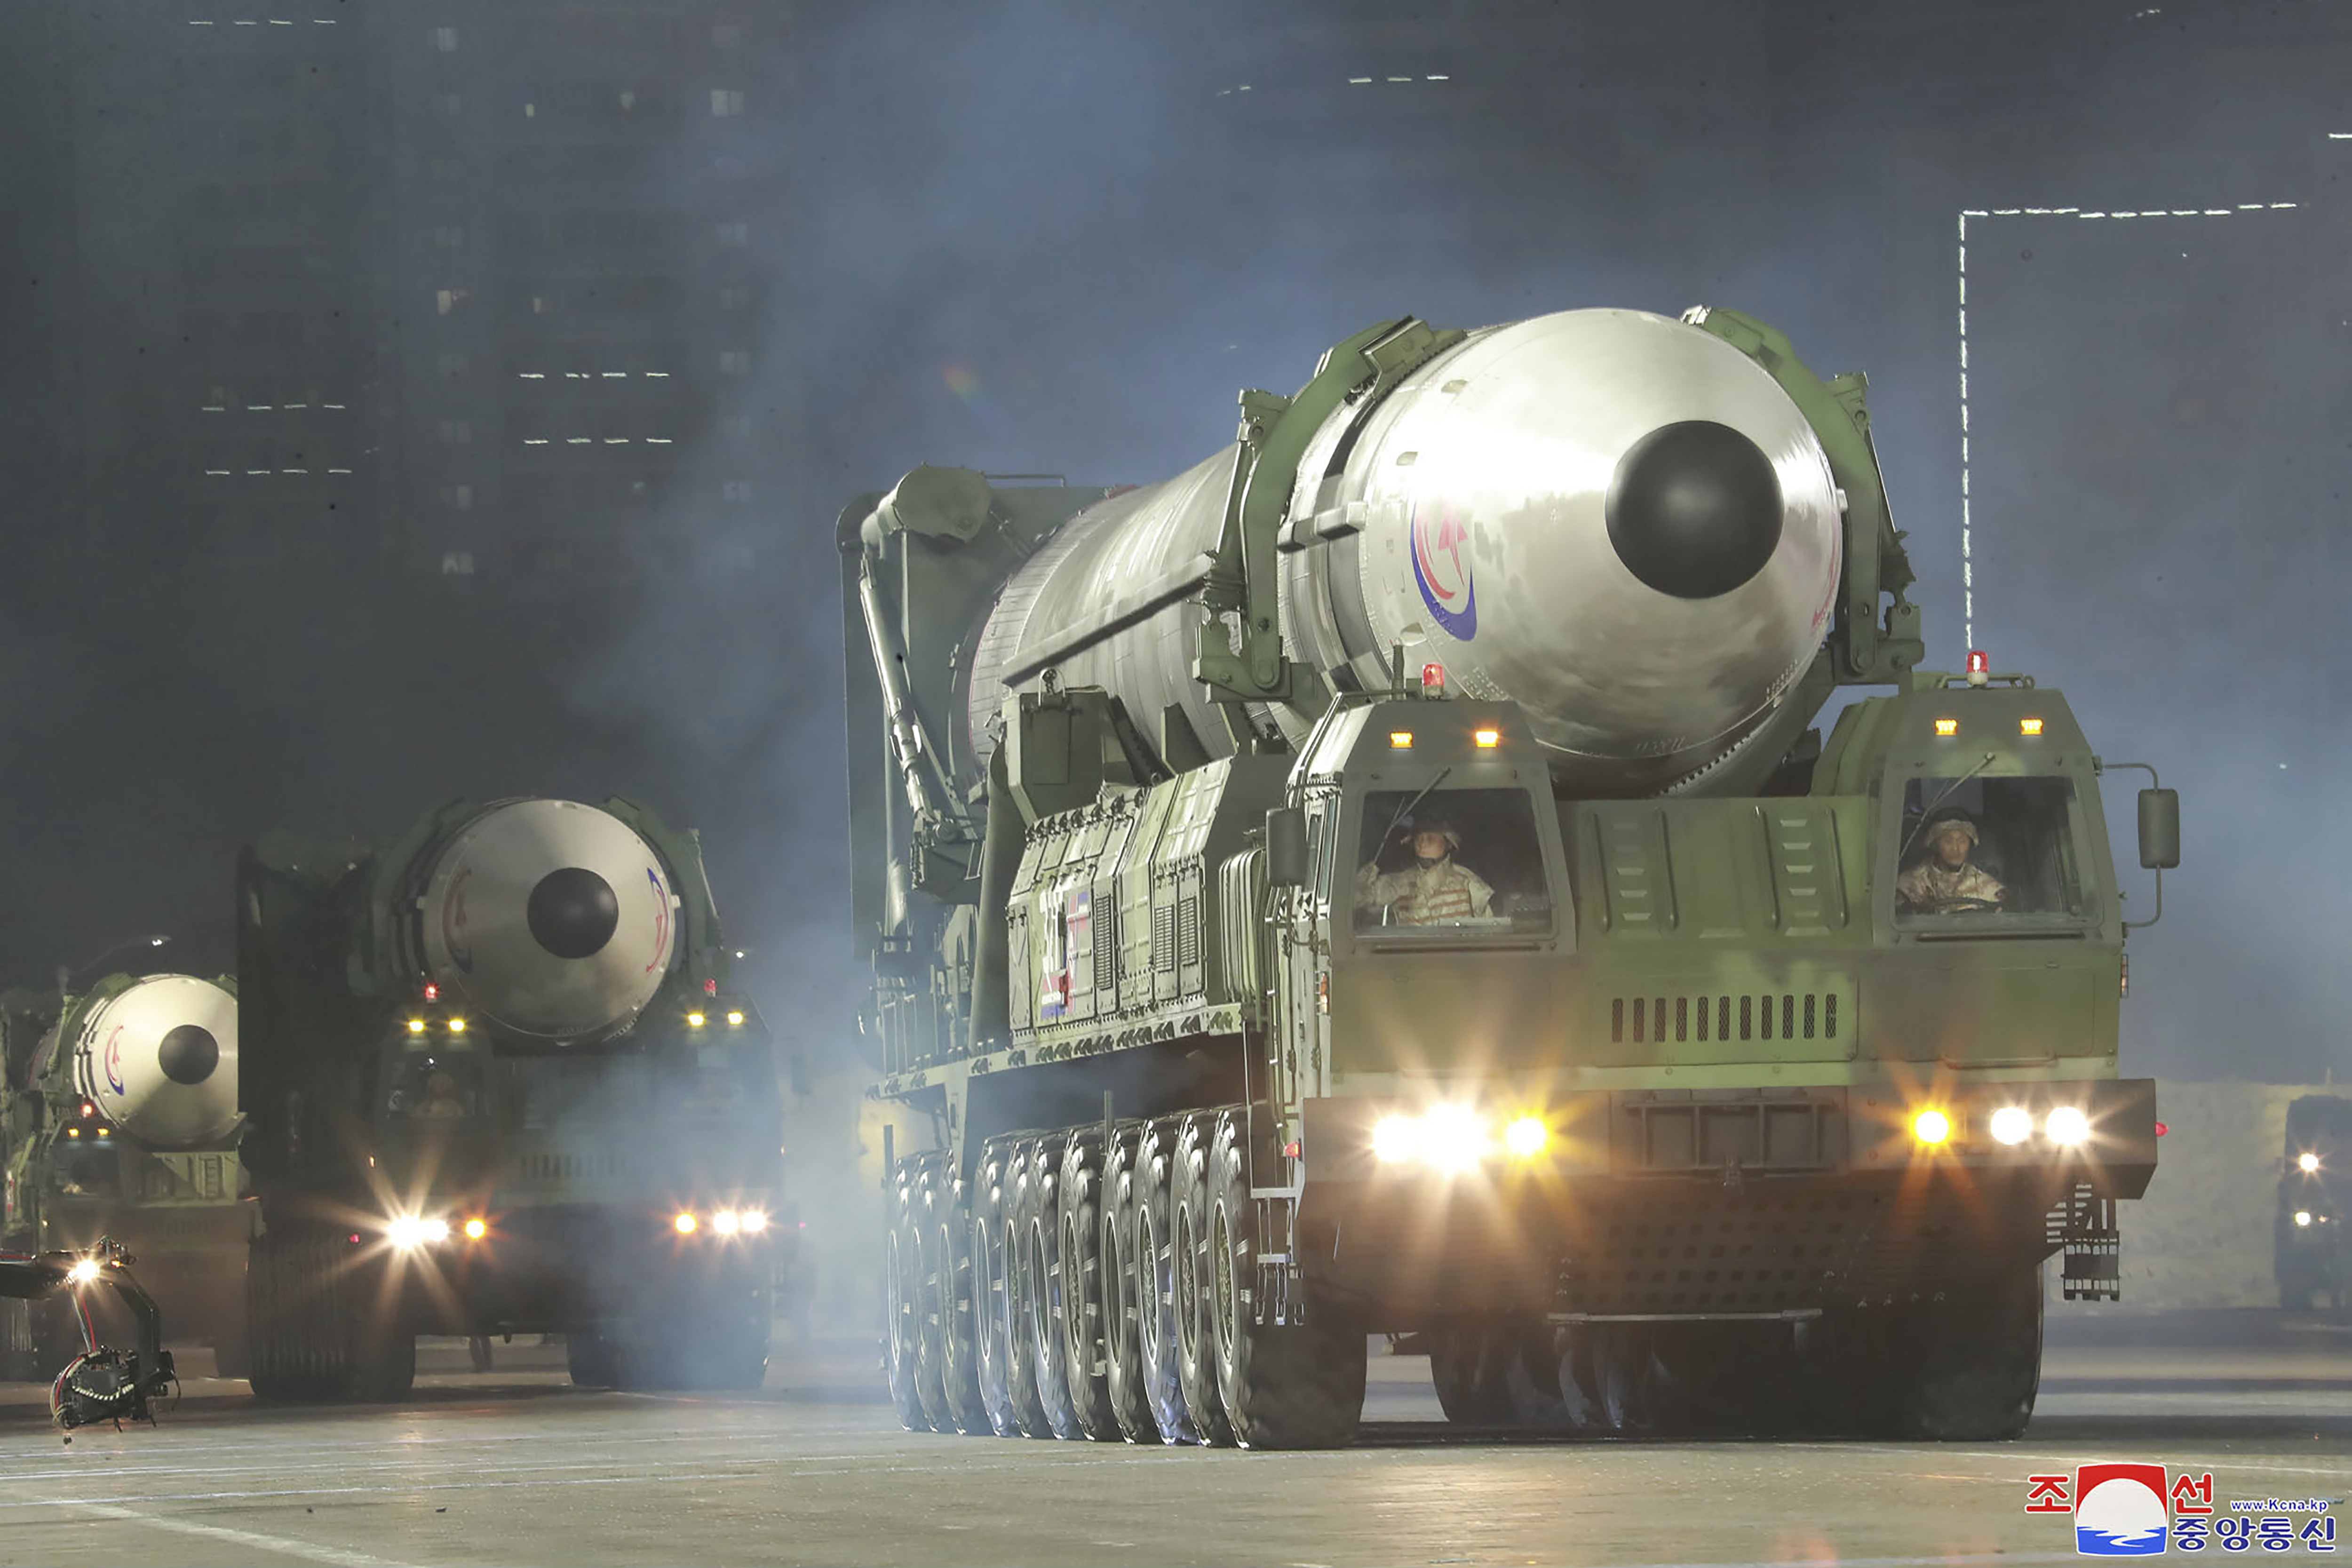 Un ICBM Hwasong-17 fue una de las nuevas armas en exhibición.  Ha sido calificado por Pyongyang como uno de sus mayores logros militares hasta el momento.  Teóricamente, el misil balístico intercontinental podría poner todo el territorio continental de EE. UU. al alcance de una ojiva nuclear norcoreana, pero los analistas dicen que hay dudas sobre si el misil puede lanzar una carga útil nuclear en el objetivo.  Corea del Norte afirma que probó con éxito el misil en marzo y describió el lanzamiento como un "poderoso disuasivo de guerra nuclear".  